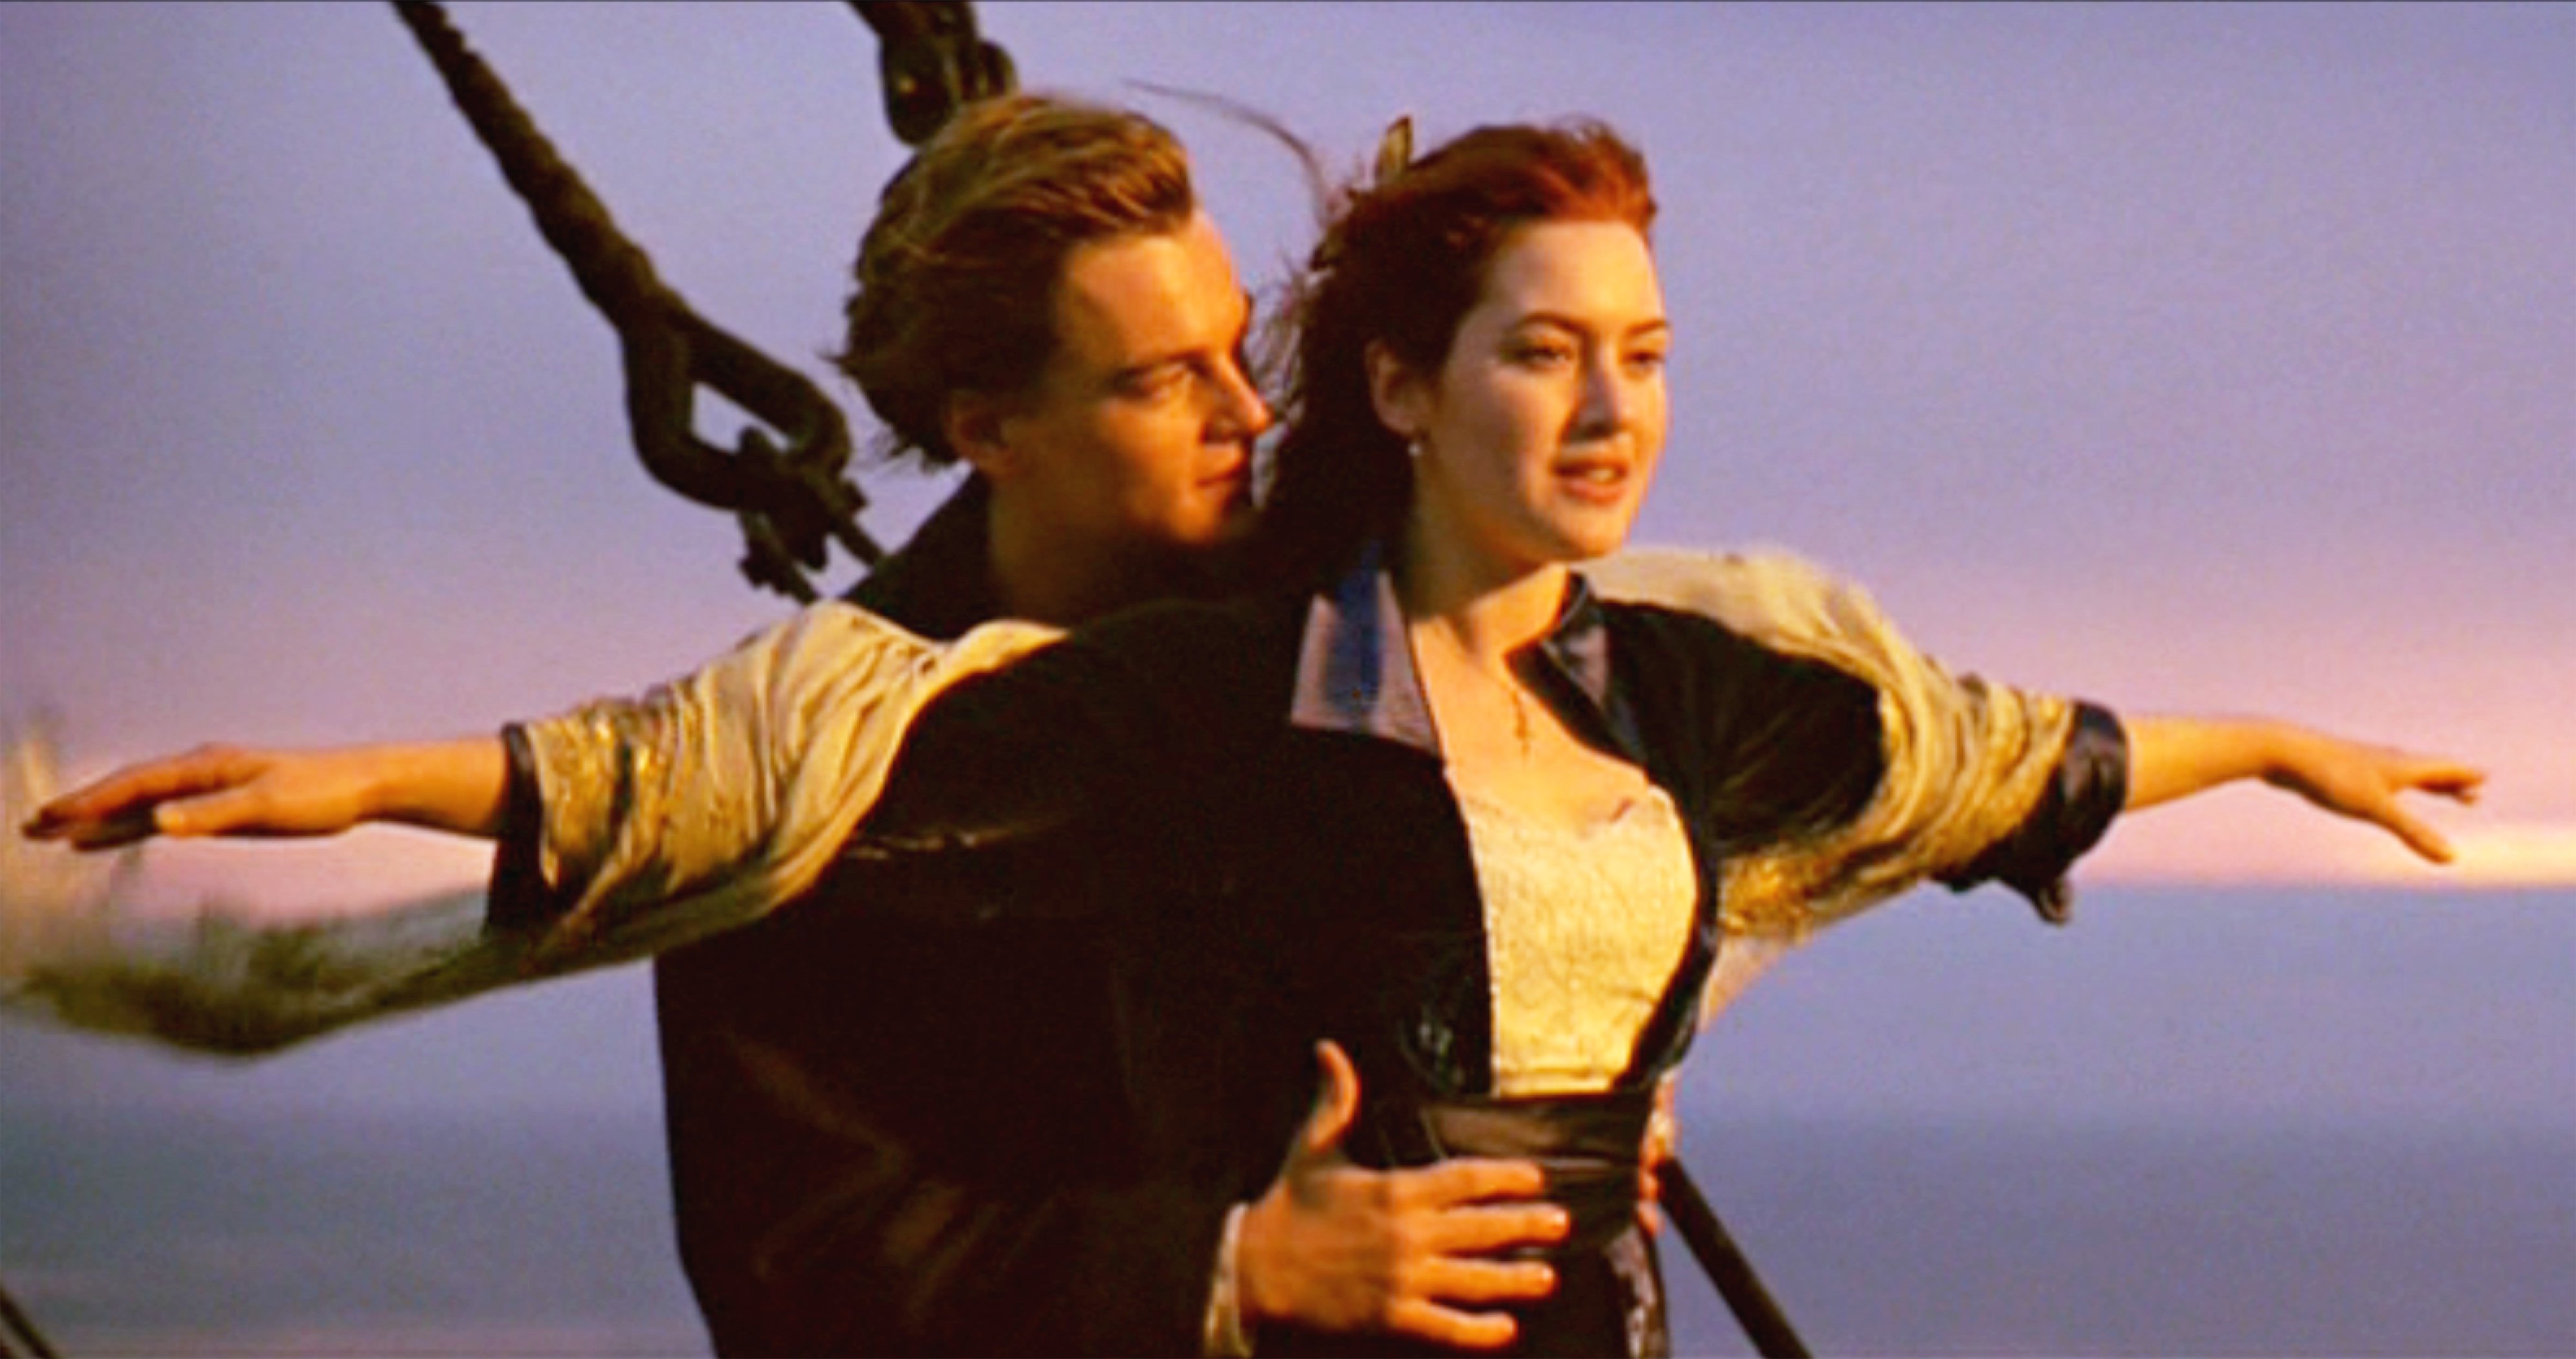 Leonardo DiCaprio como Jack y Kate Winslet como Rose en la película "Titanic" el 19 de diciembre de 1997 en Los Ángeles, California ┃Foto: Getty Images